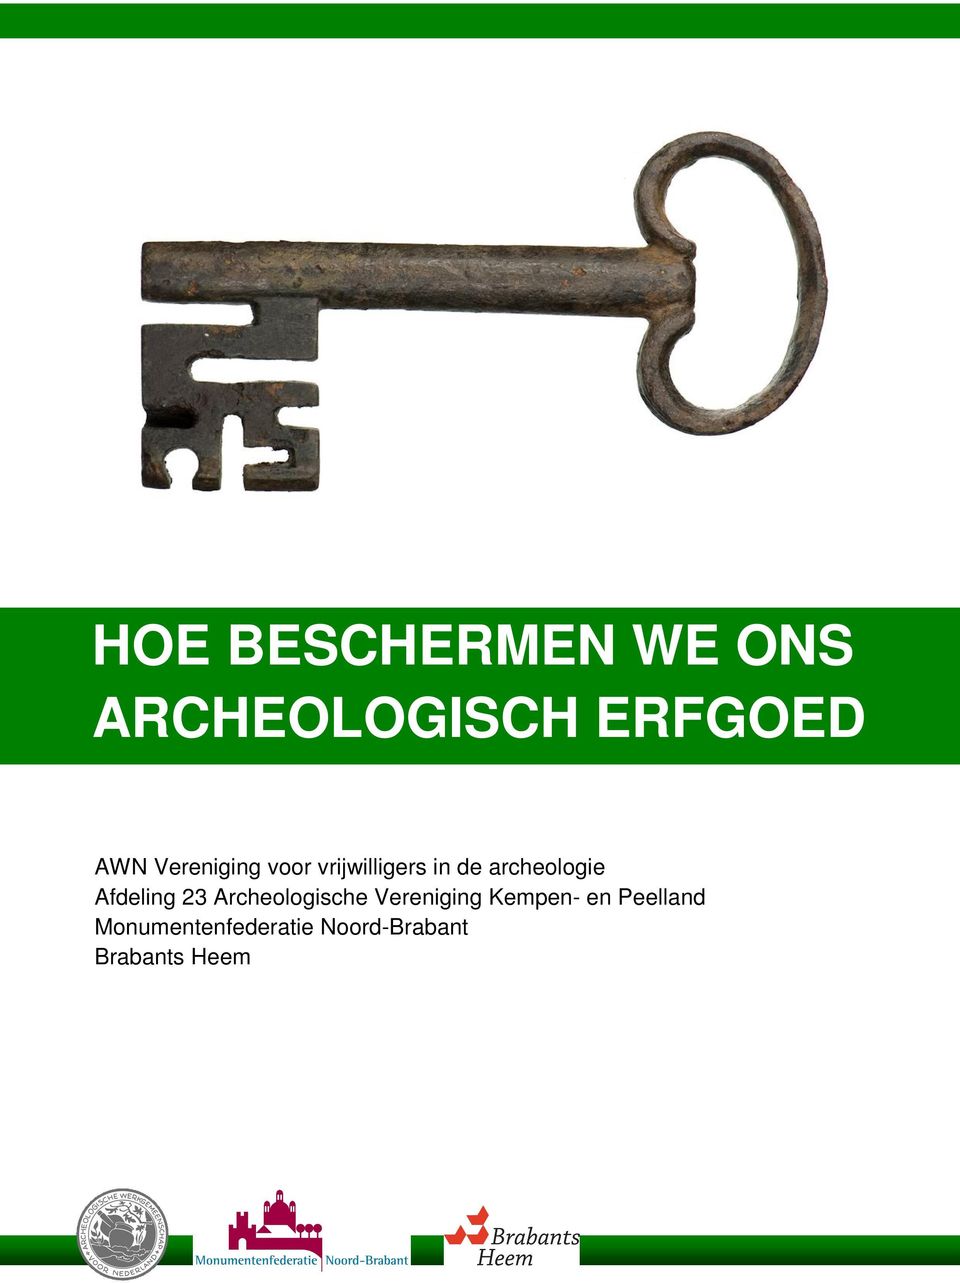 Afdeling 23 Archeologische Vereniging Kempen- en